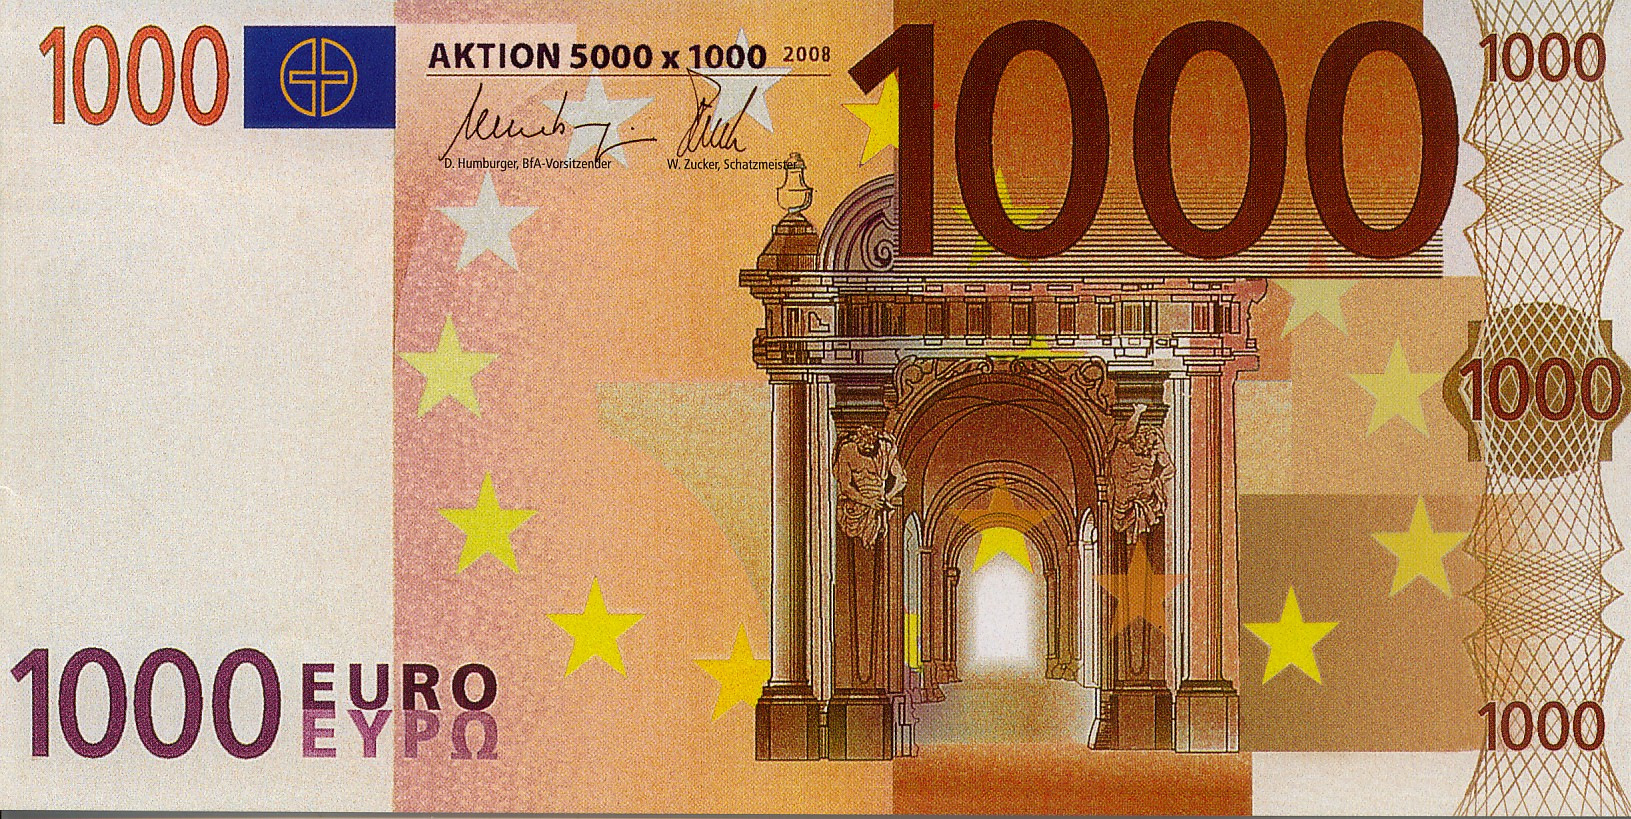 Большая купюра евро. Банкноты 1000 евро. 1000 Евро тысячная купюра. 1000 Евро одной купюрой. 1000 Евро купюра фото.